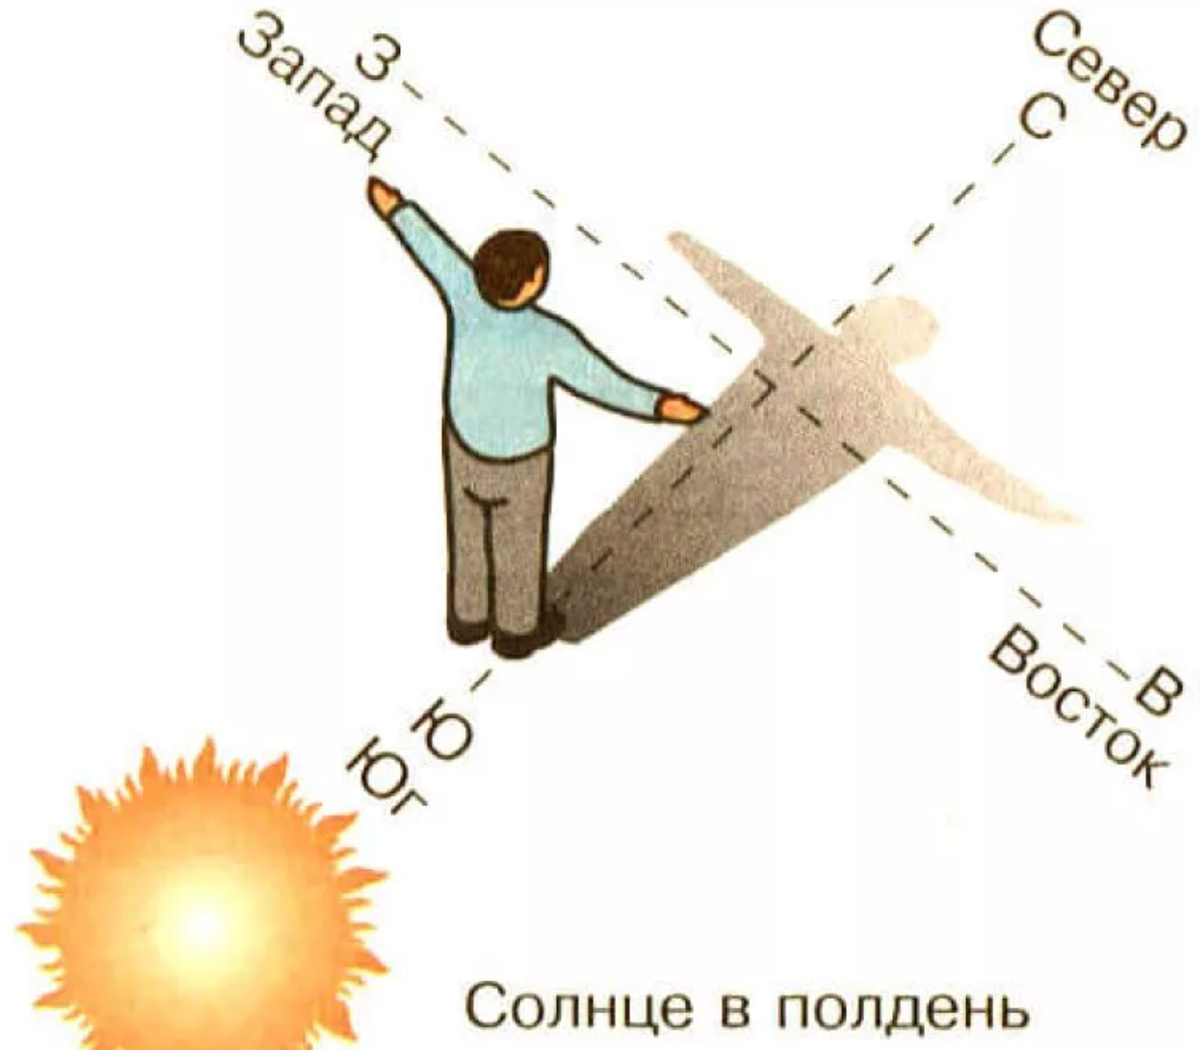 Ориентирование на местности по солнцу. Как определить стороны света по солнцу. Как ориентироваться по солнцу картинки. Как ориентироваться по солнцу в полдень. Направление солнечного света